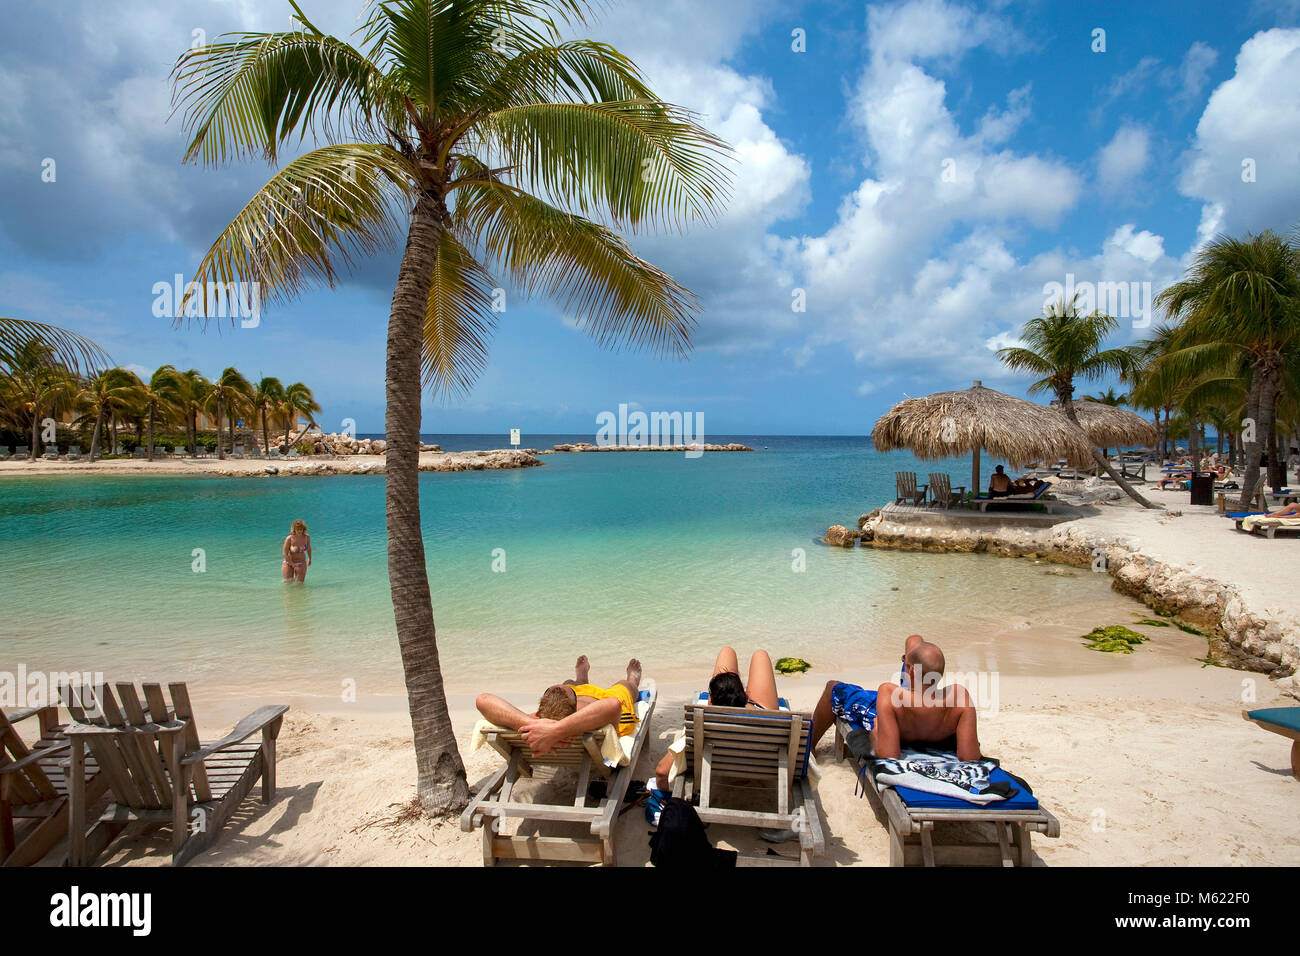 La gente di balneazione e prendere il sole in spiaggia idilliaca dei Lions Dive Resort, Curacao, Antille olandesi, Caraibi, Mar dei Caraibi Foto Stock